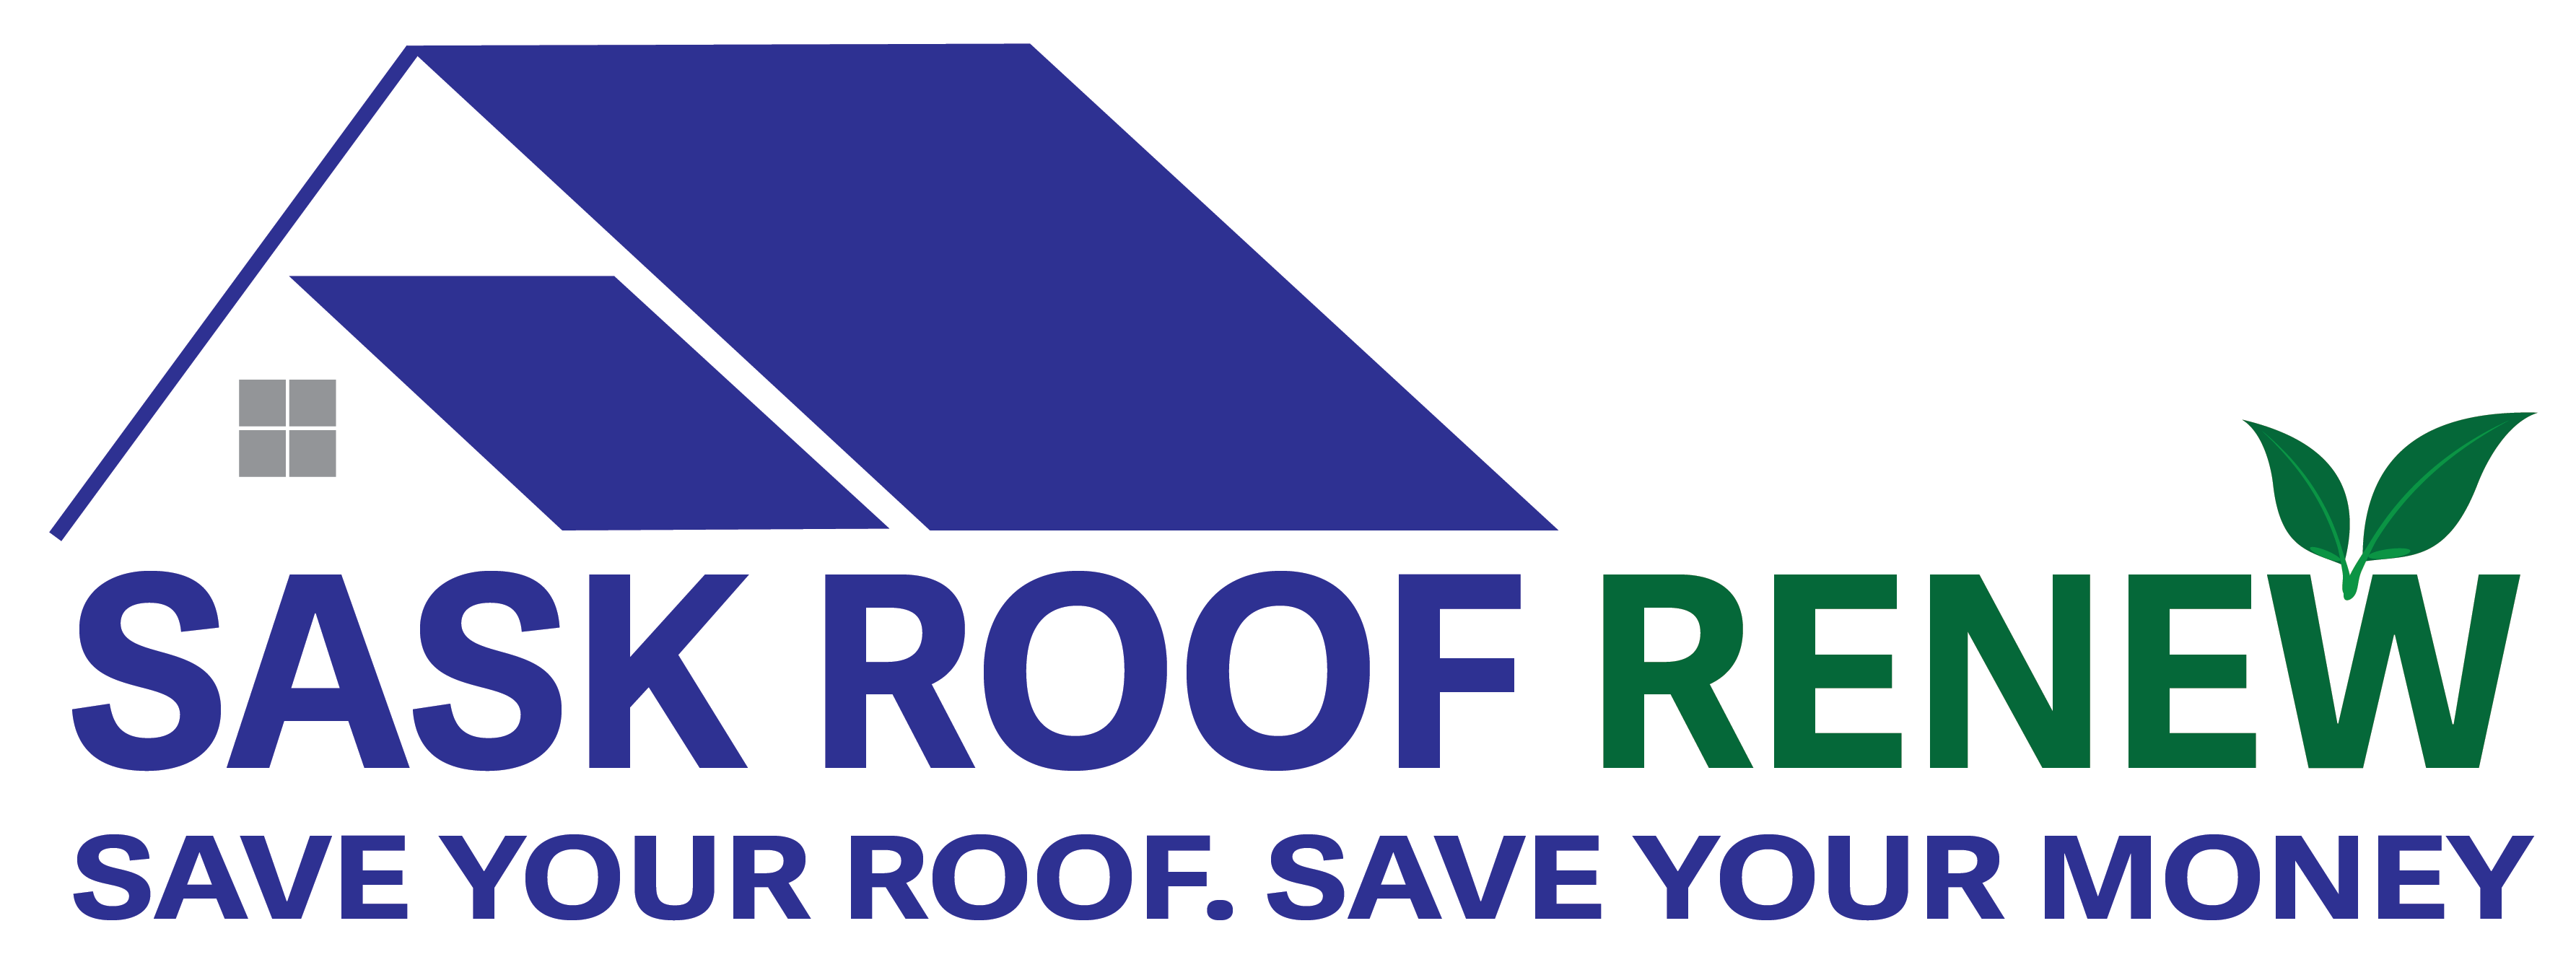 Sask Roof Renew